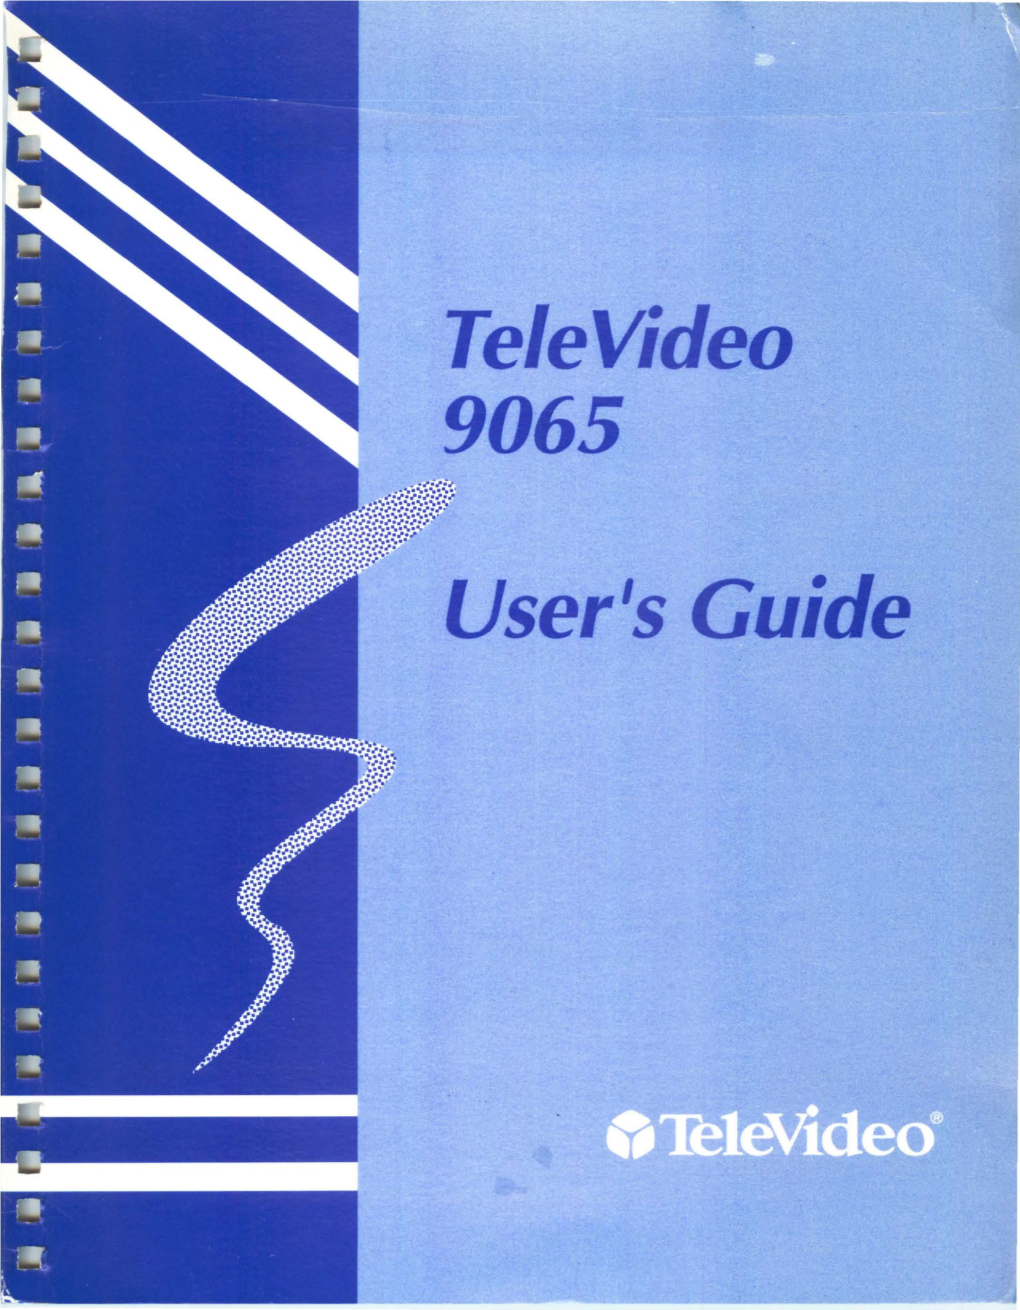 Tele Video User's Guide